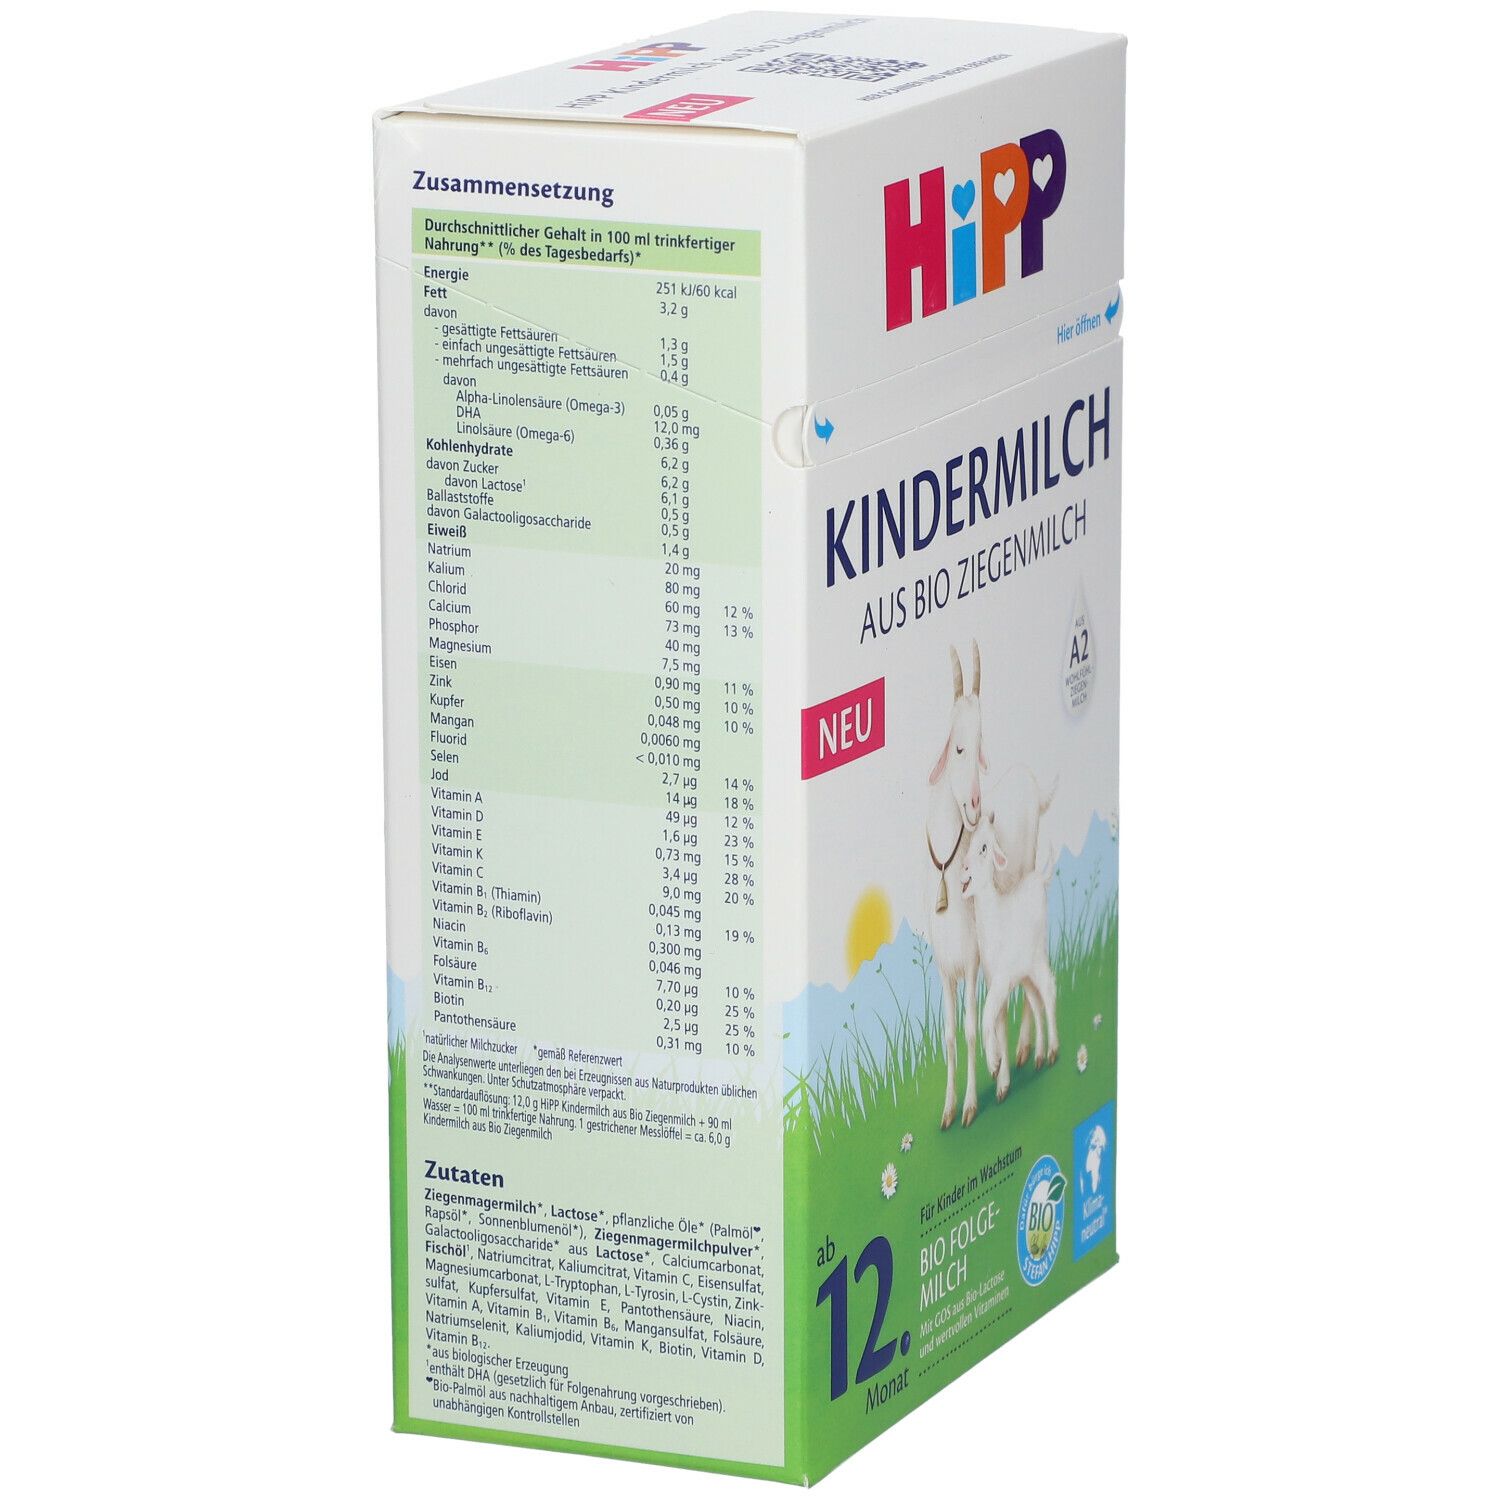 HiPP Kindermilch aus Bio Ziegenmilchab dem 12. Monat